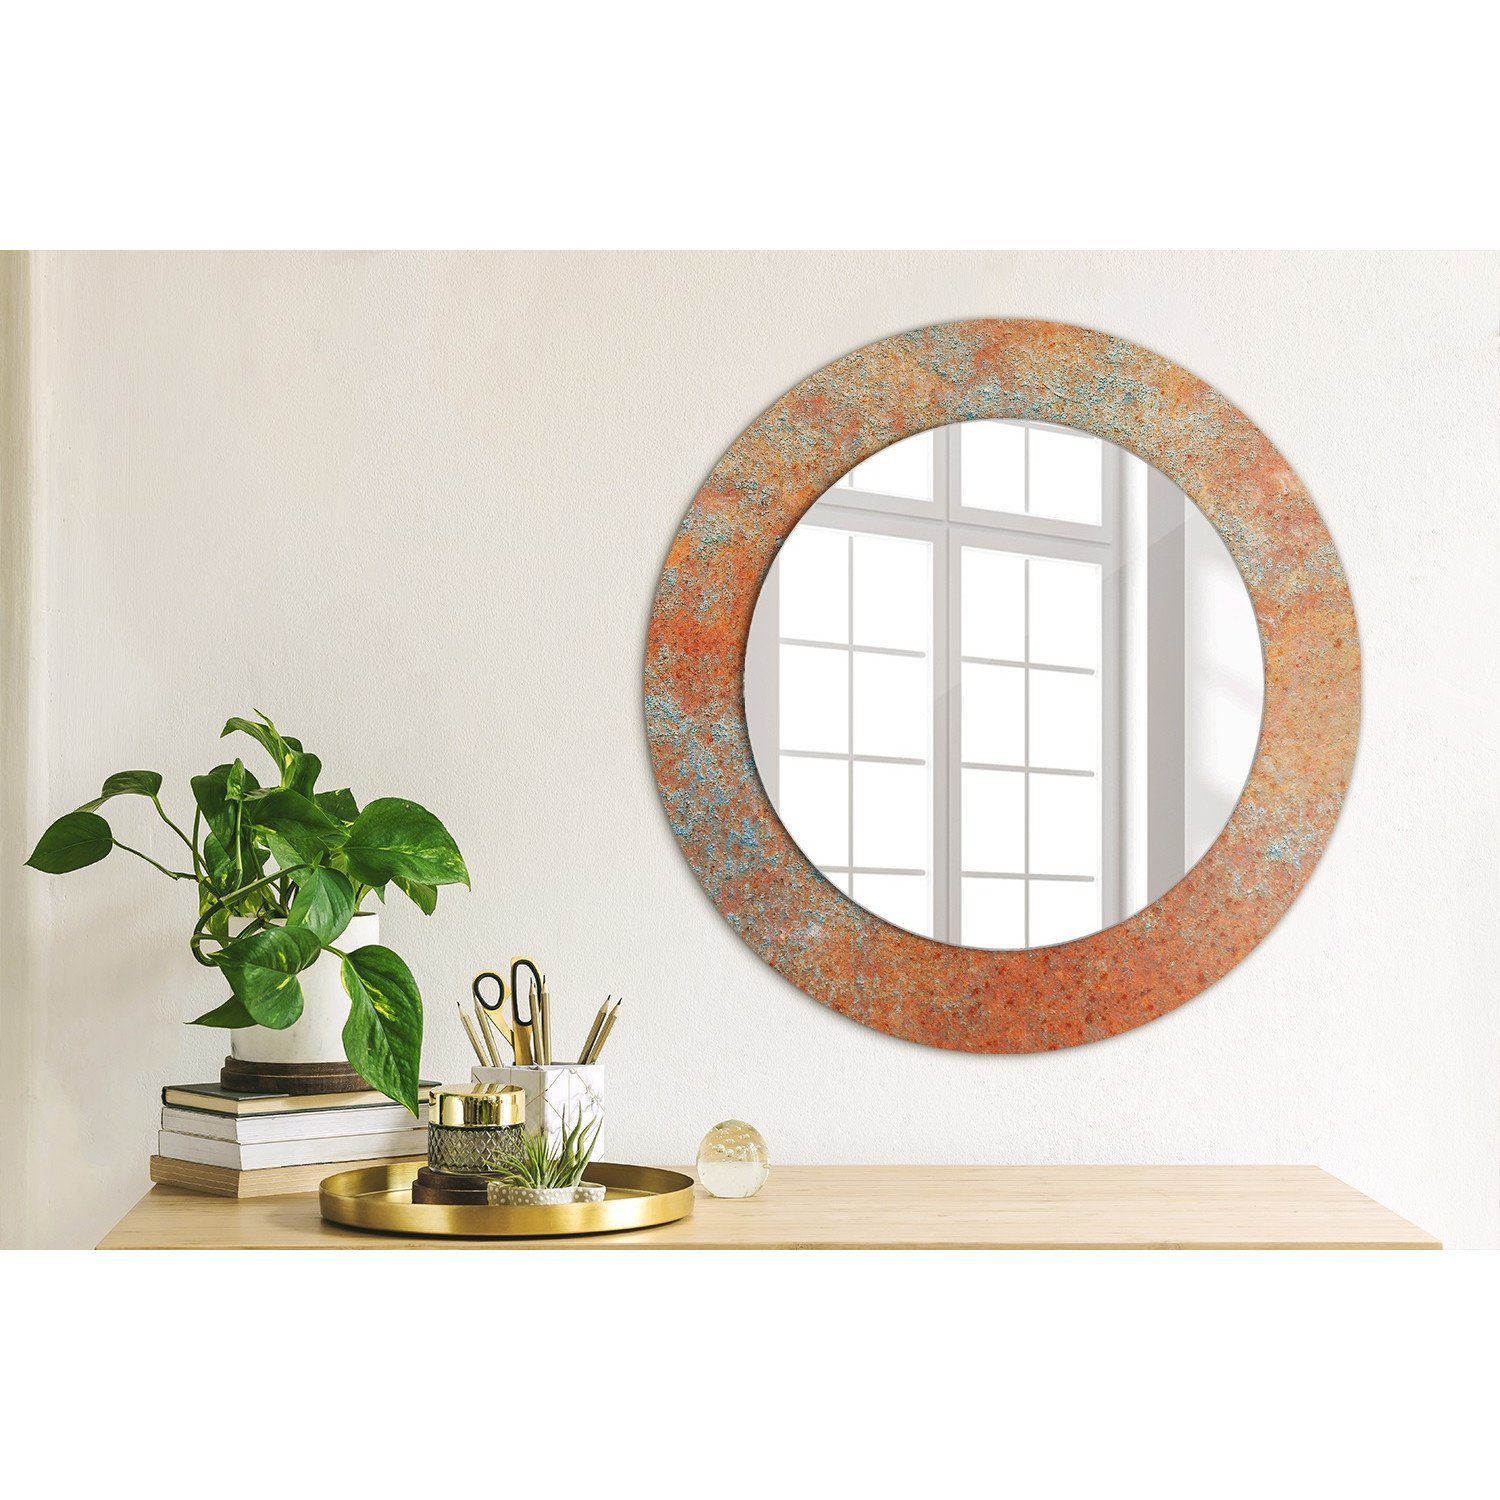 Rostig Rund: Spiegel Modern mit Wandmontage Wandspiegel Tulup Metall Spiegel Aufdruck Ø50cm